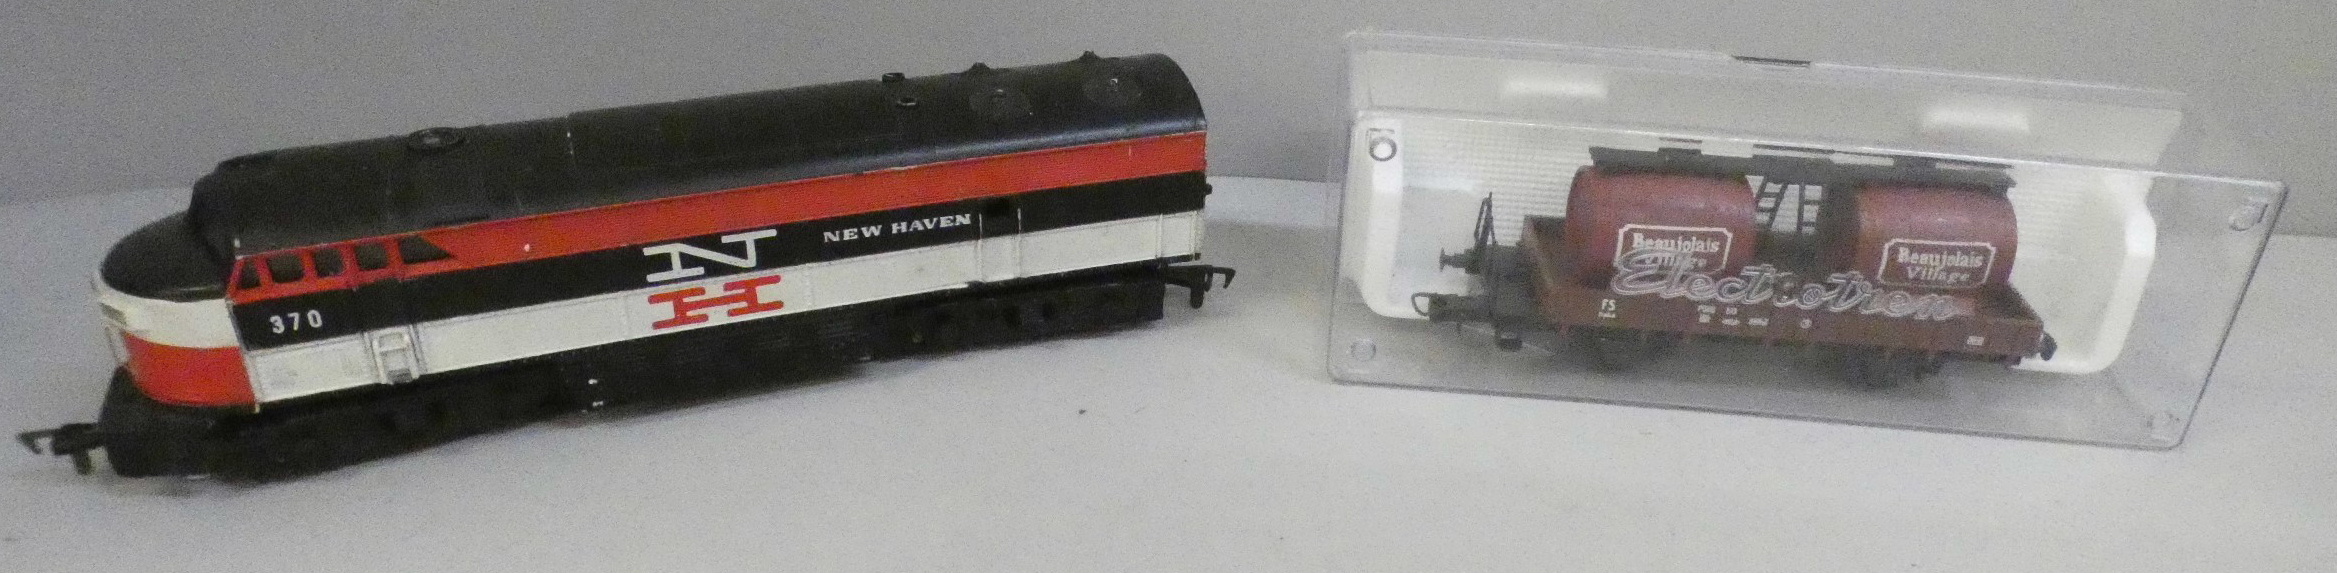 A 00 gauge locomotive, 11002 Pannier 0-6-0 Br Black, other model rail, Fuji camera lens, Tri-ang - Image 4 of 4